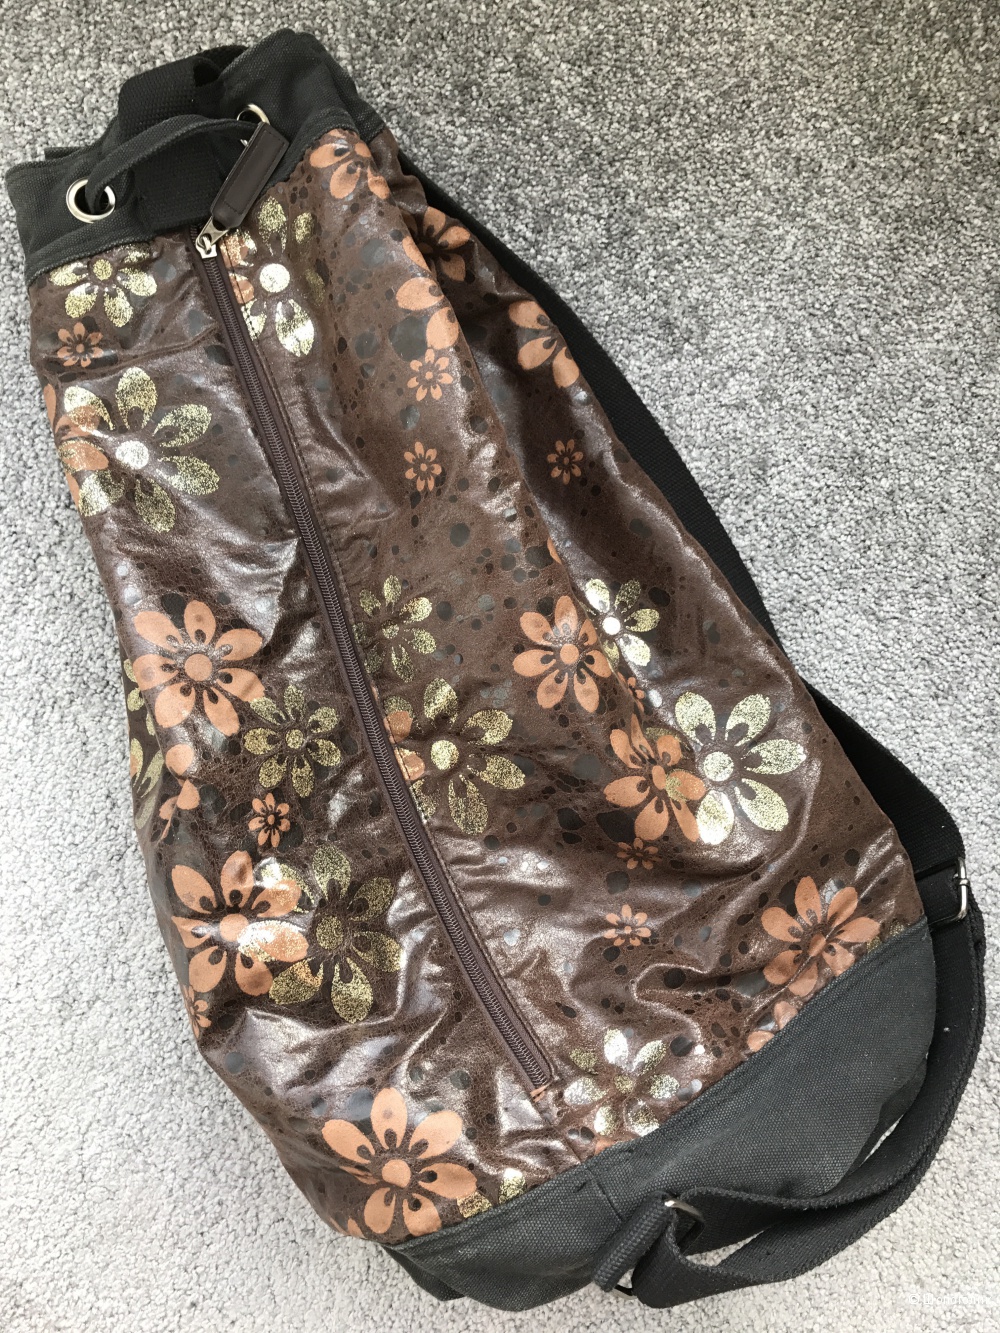 Рюкзак-торба на одной лямке от гонг-конского независимого бренда